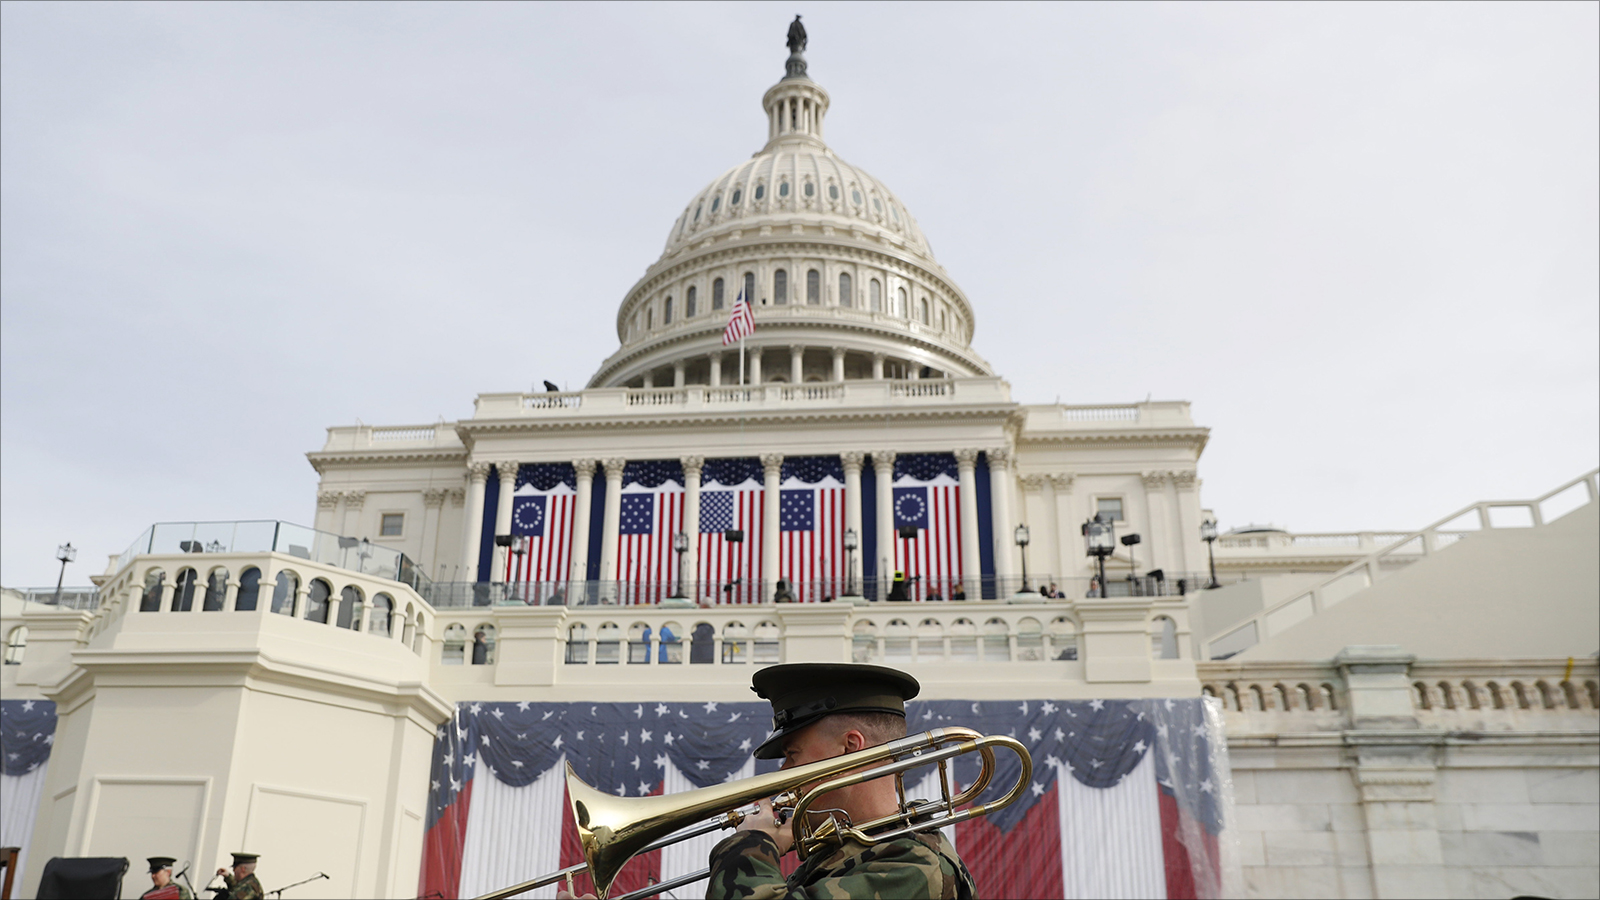 ‪الأعلام الأميركية رفعت على مبنى‬ الأعلام الأميركية رفعت على مبنى الكونغرس استعدادا لحفل تنصيب الرئيس الـ 45 للولايات المتحدة (الأوروبية)